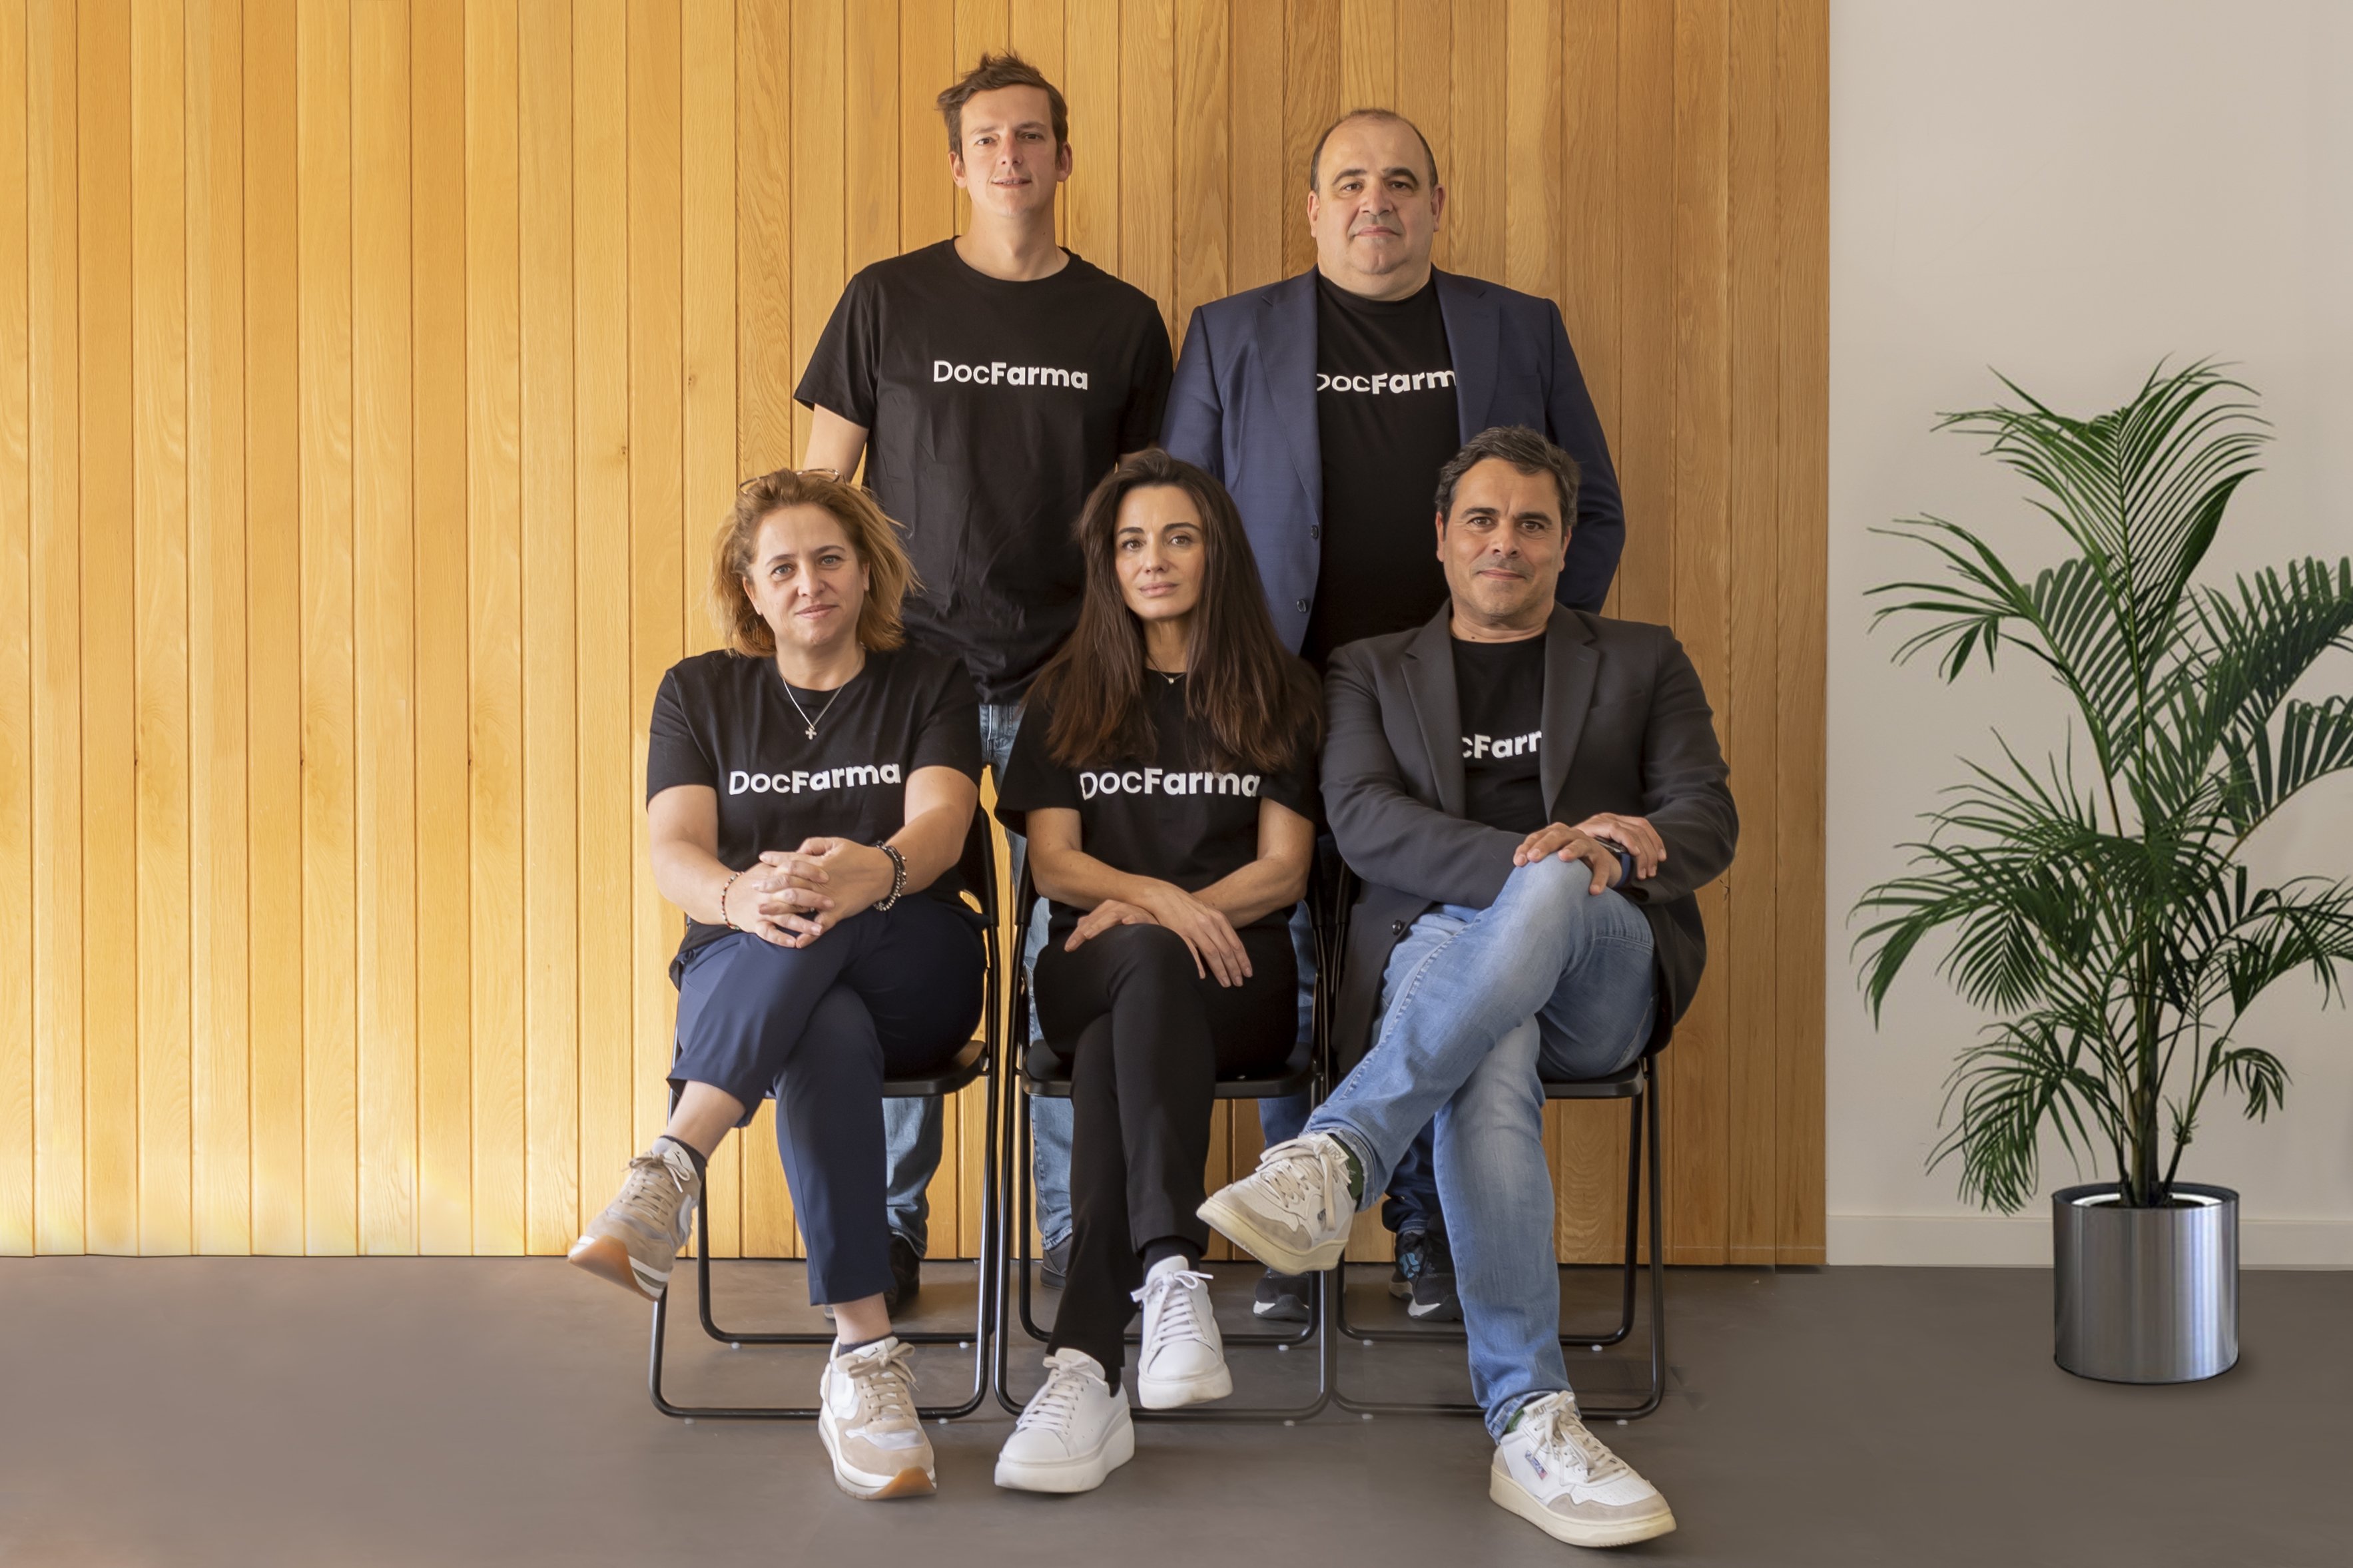 Neix DocFarma, la startup catalana que vol digitalitzar el sector farmacèutic